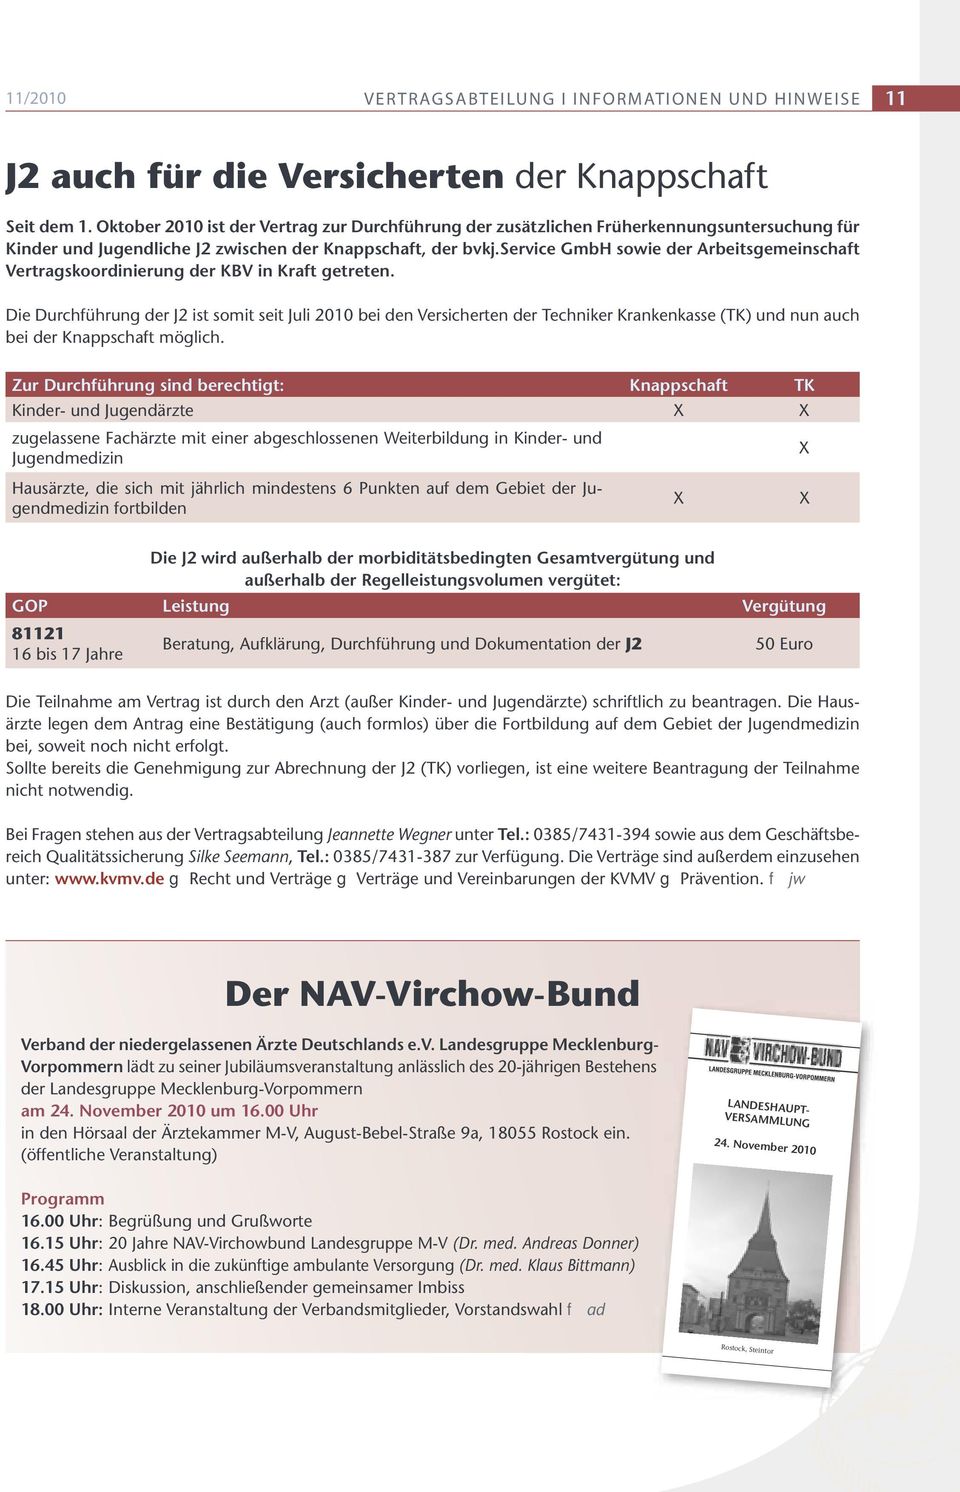 service GmbH sowie der Arbeitsgemeinschaft Vertragskoordinierung der KBV in Kraft getreten.